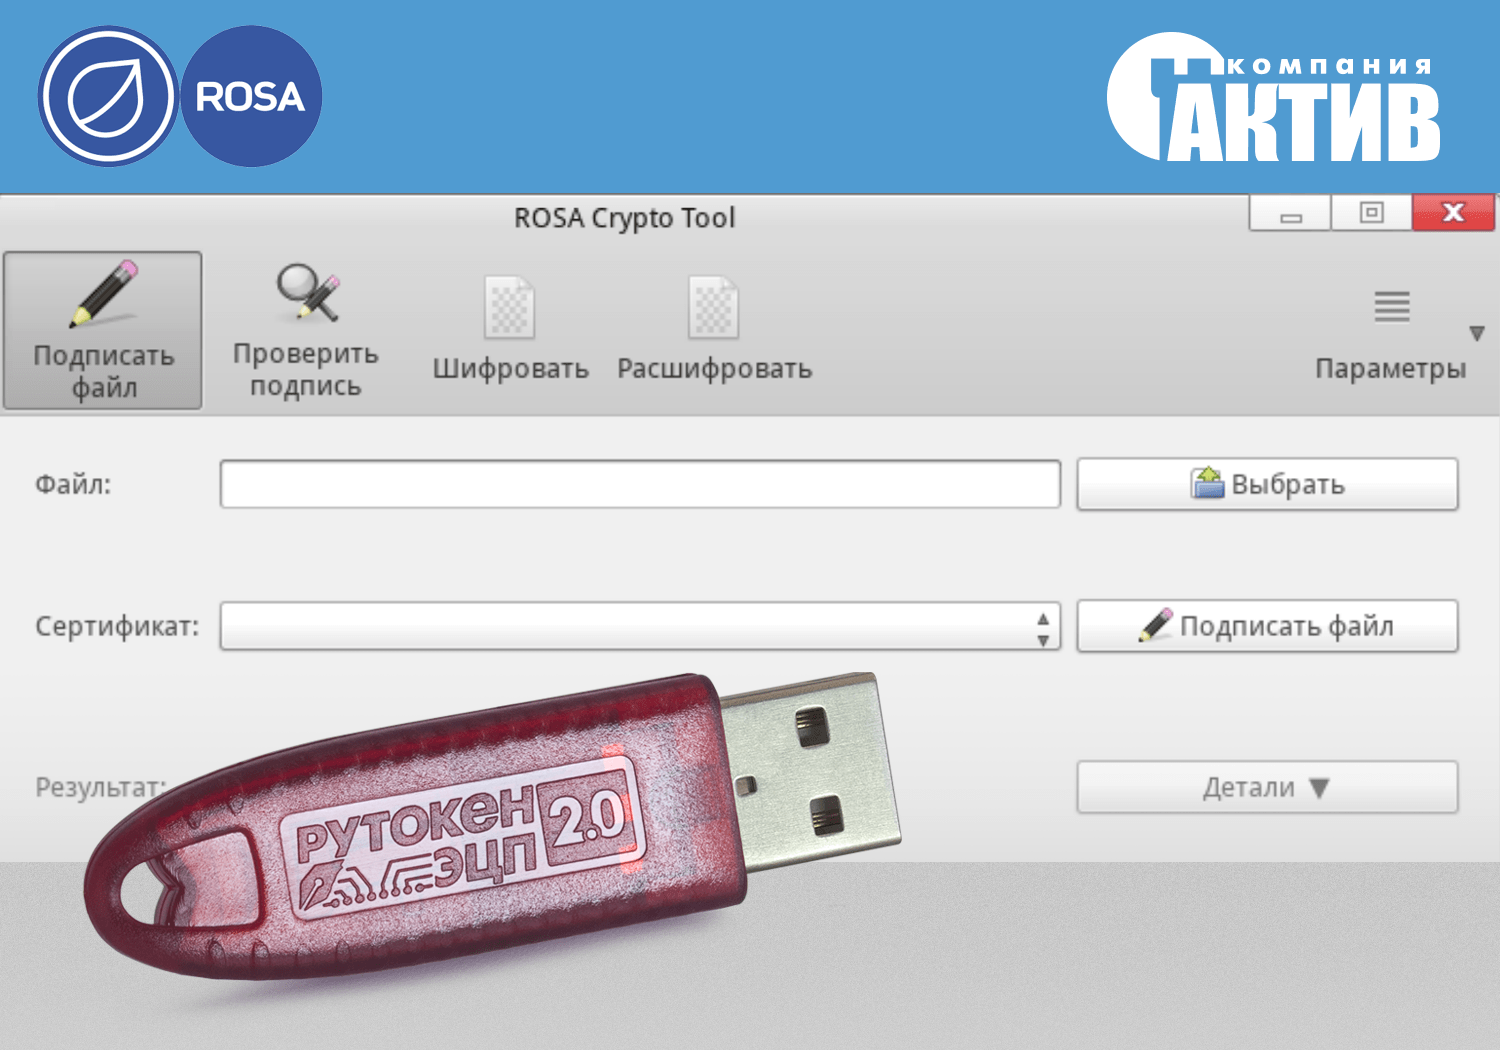 USB-токены и смарт-карты Рутокен работают с ОС ROSA